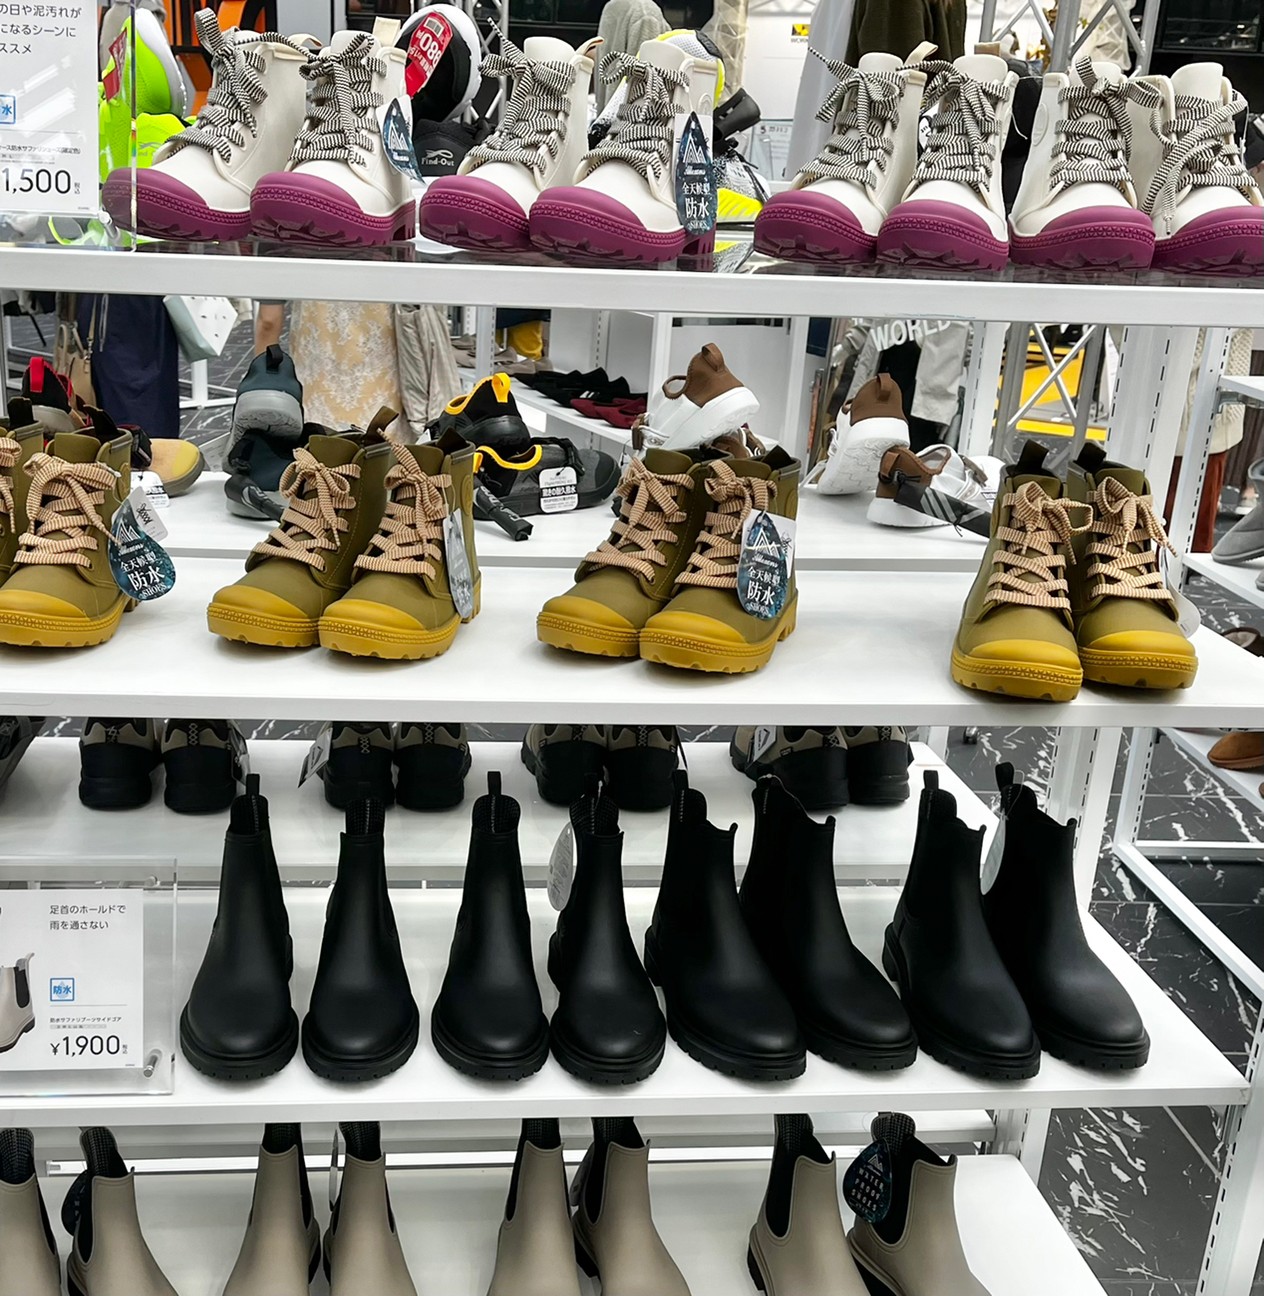 ワークマン展示会で靴が陳列されている写真